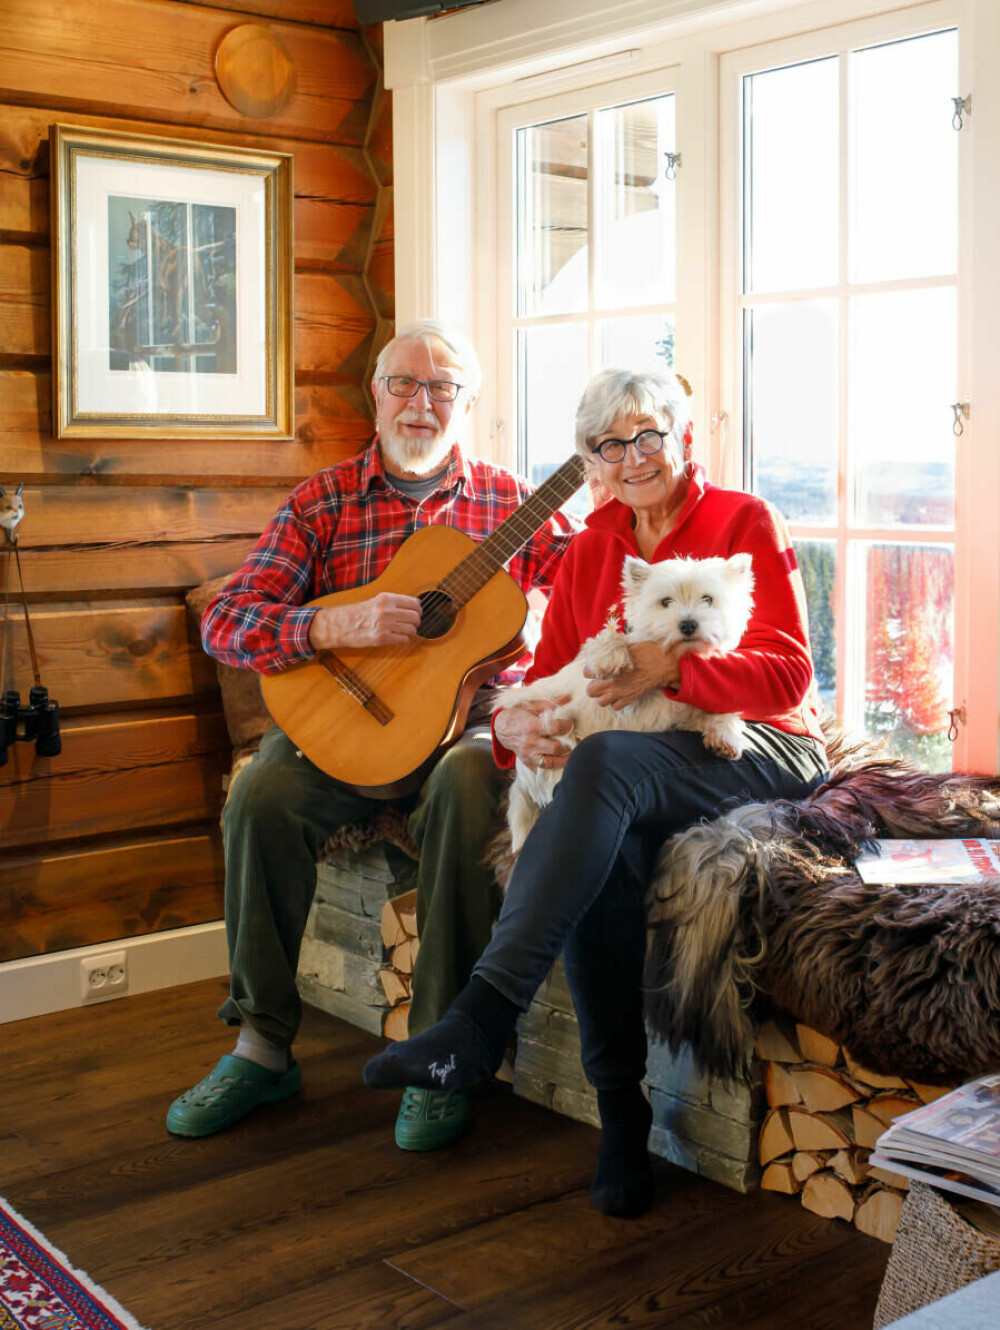 JULESTEMNING: Mariannes mor Marit og hennes kjæreste Odd Georg setter julestemningen med gitarspill og sang.